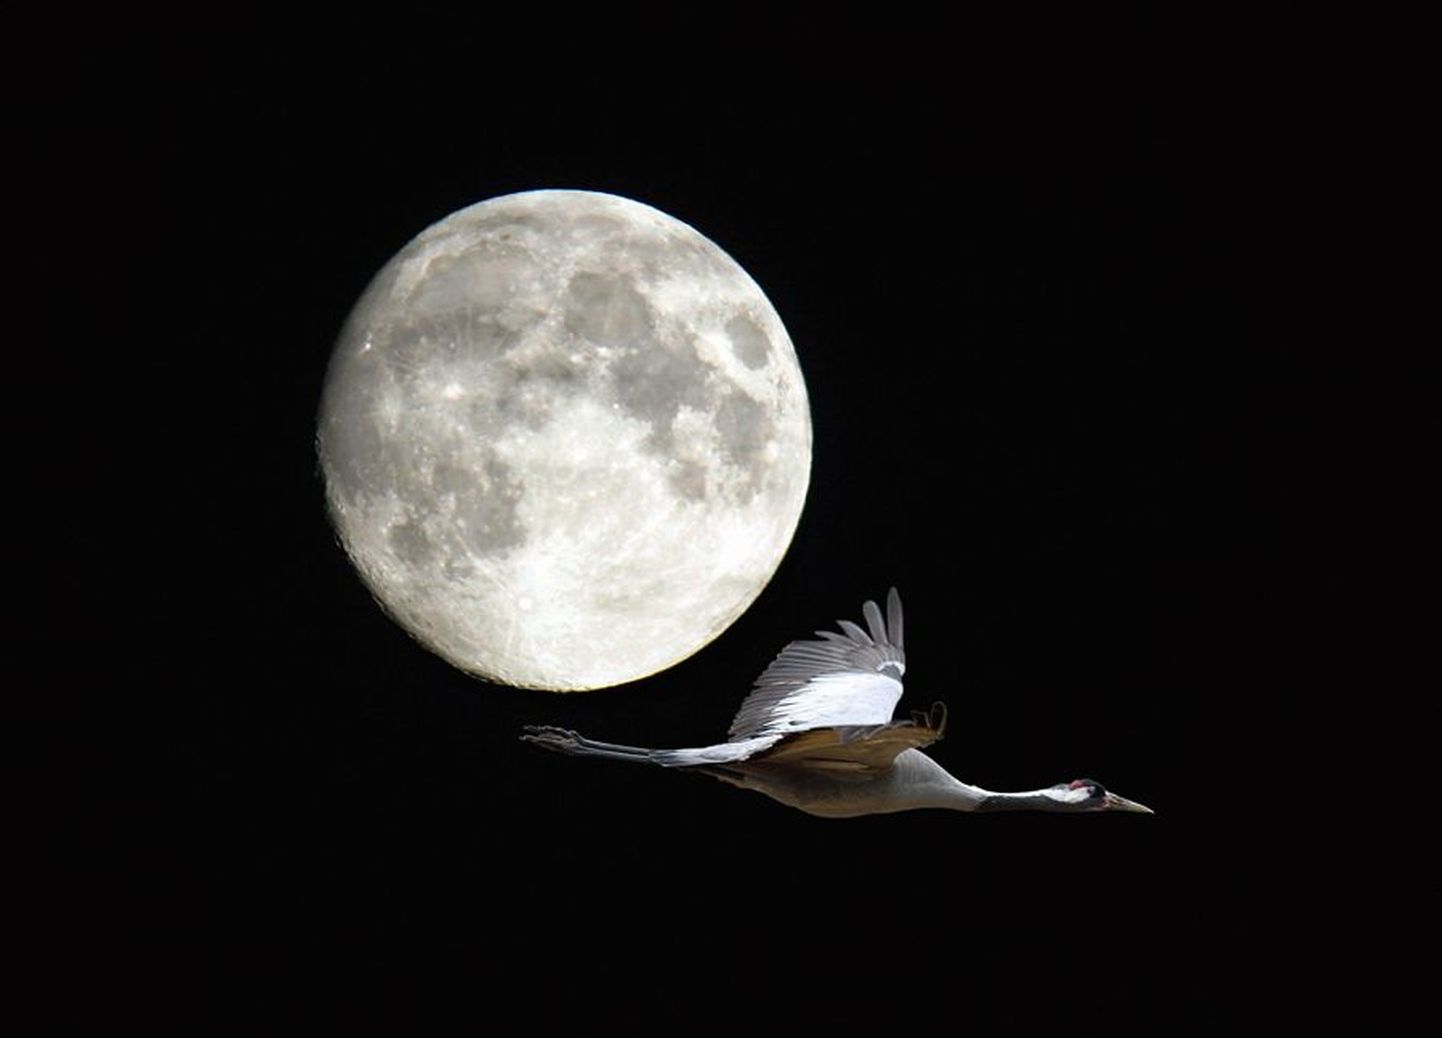 Kuu tõusu ajaks on sookured juba rabajärve äärde ööbima lennanud. Kui nad seal omavahel päevamuljeid jagavad, kostab käratsemine kilomeetrite taha.